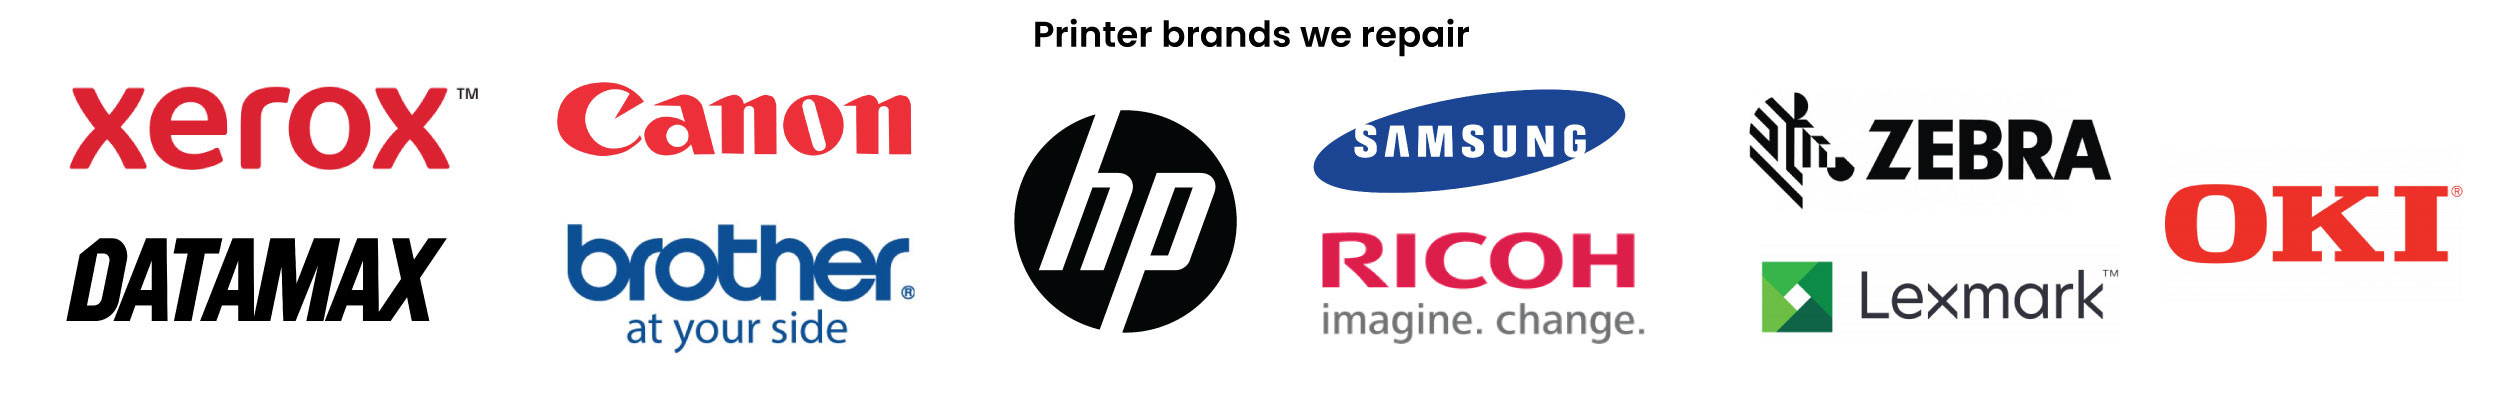 Printer Brands we repair - Logos